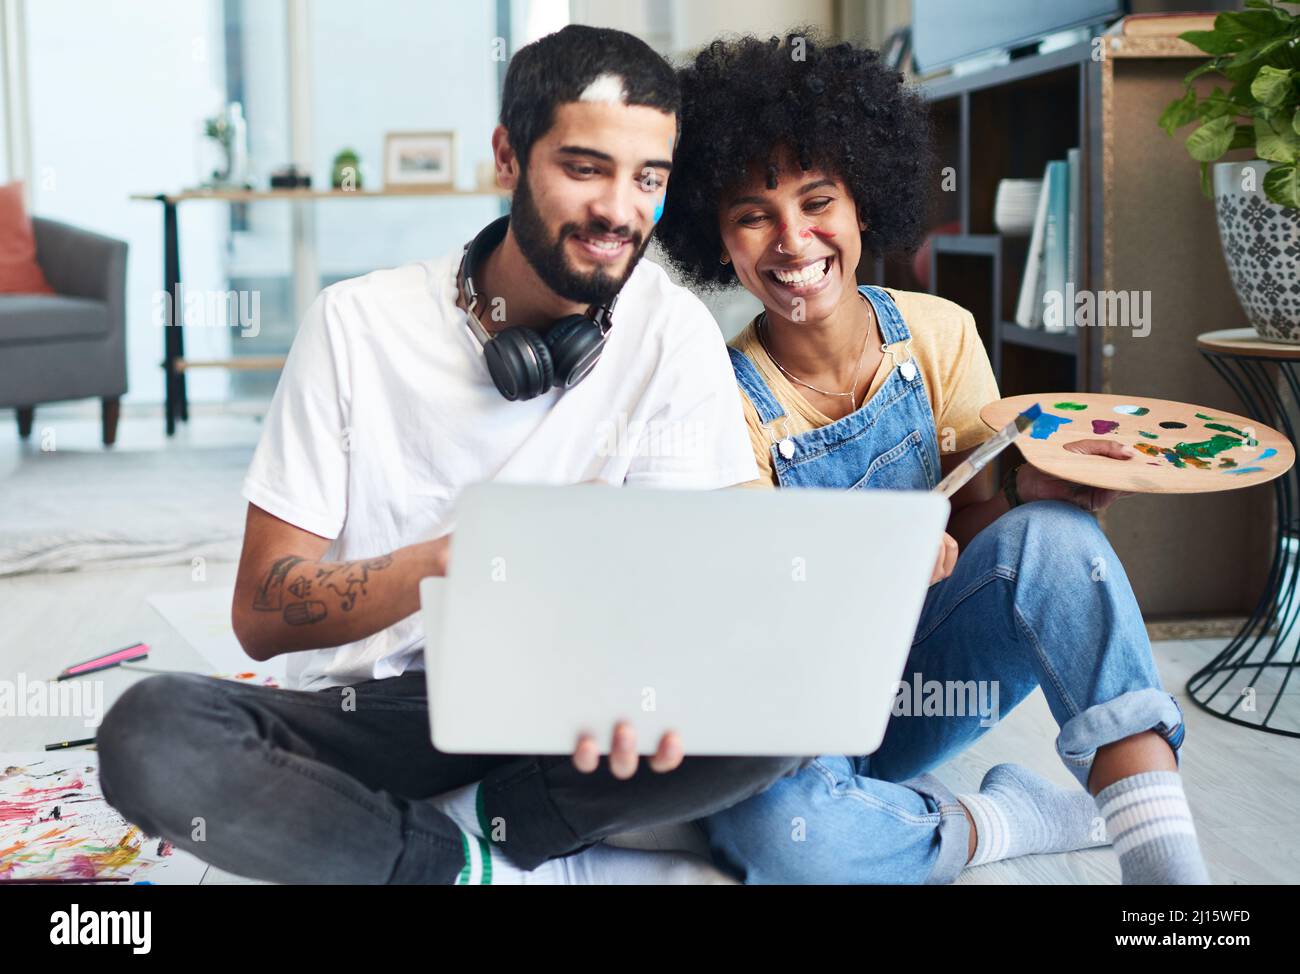 Das Internet ist voll von lustigen Aktivitäten für Paare. Aufnahme eines jungen Paares, das einen Laptop benutzt, während es zu Hause malt. Stockfoto